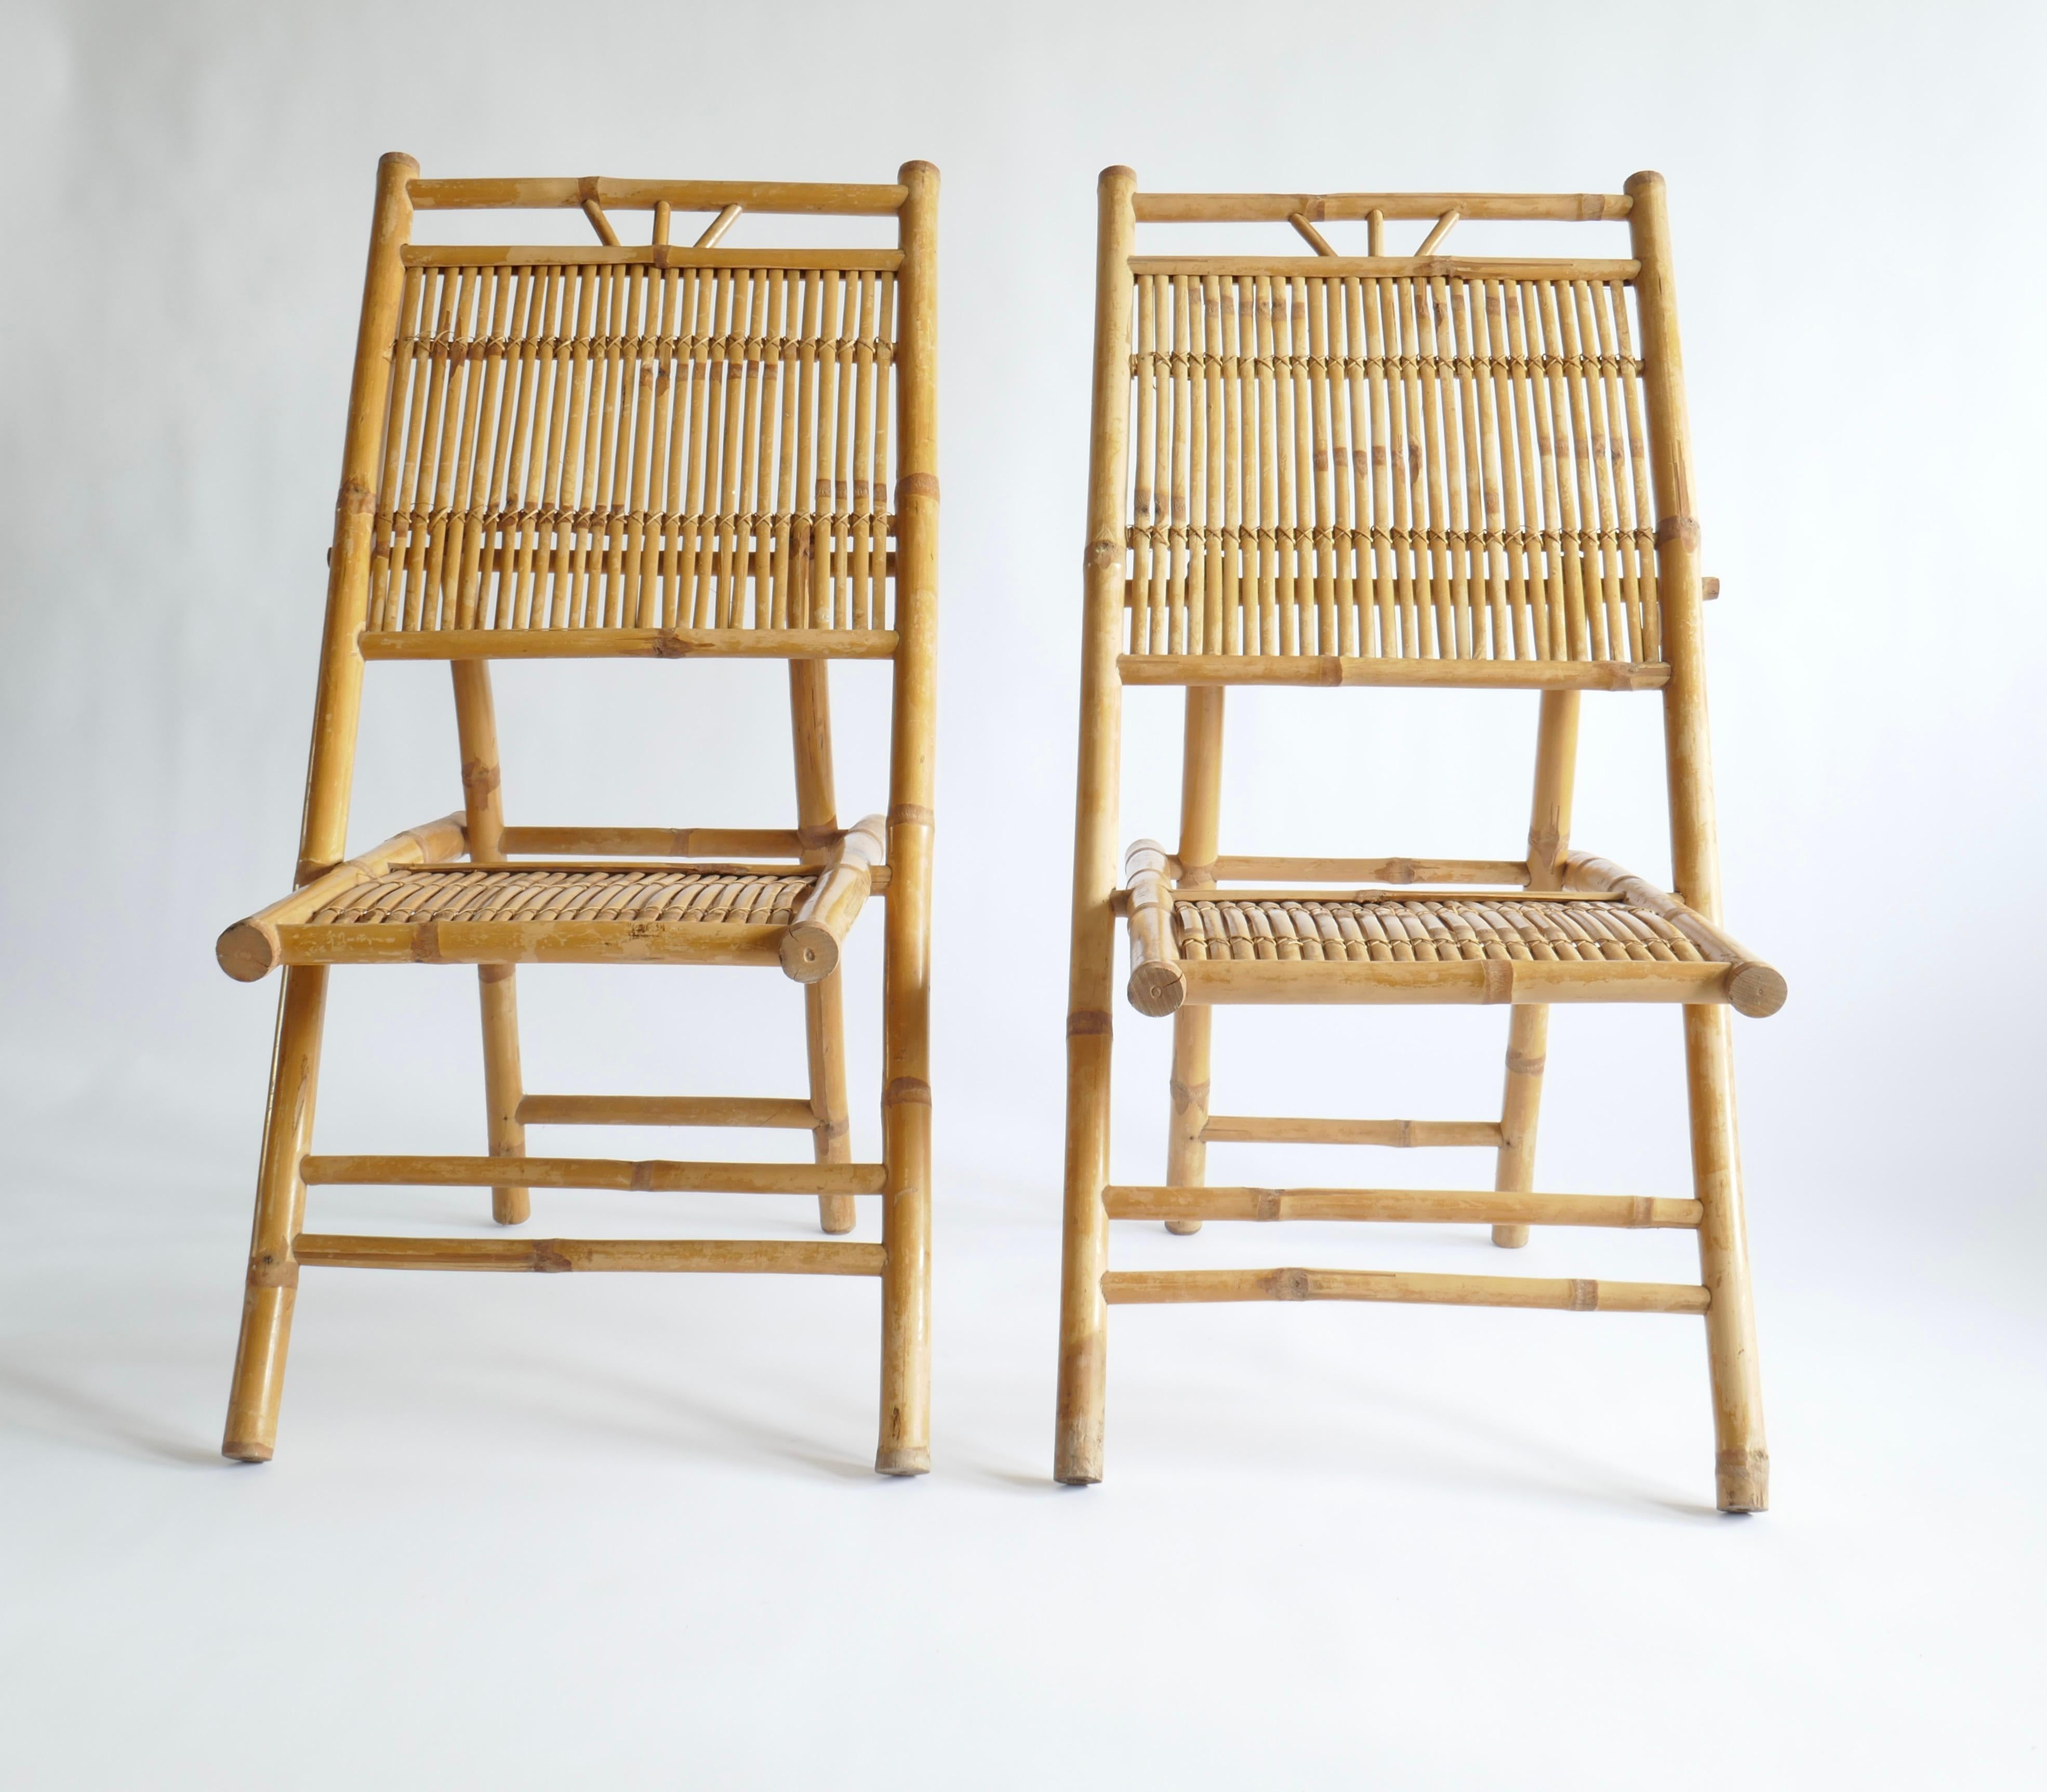 Elegantes Paar italienischer Mid-Century Modern Rattan und Bambus Stühle oder Lounge Stühle. Sie haben eine klassische X-förmige Beinstruktur und sind aus Rattanlatten konstruiert, die so angeordnet und von Hand zusammengenäht sind, dass sie